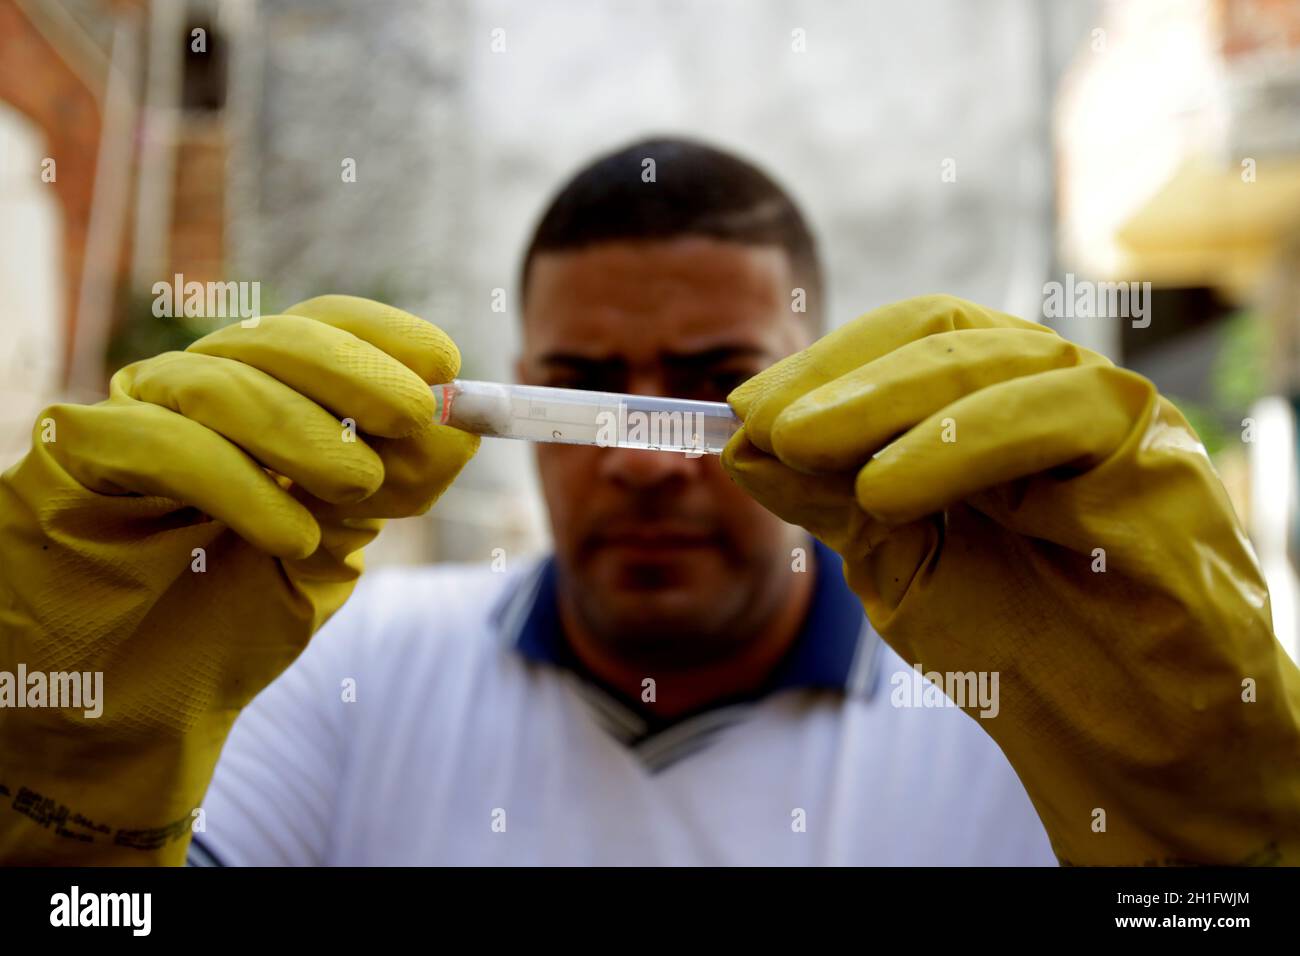 salvador, bahia/brasilien - 5. Juli 2019: Gesundheitsagent sammelt eine Probe der Aedes aegypti-Moskitogarve während einer Untersuchung von Immobilien in der Nachbarschaft Stockfoto